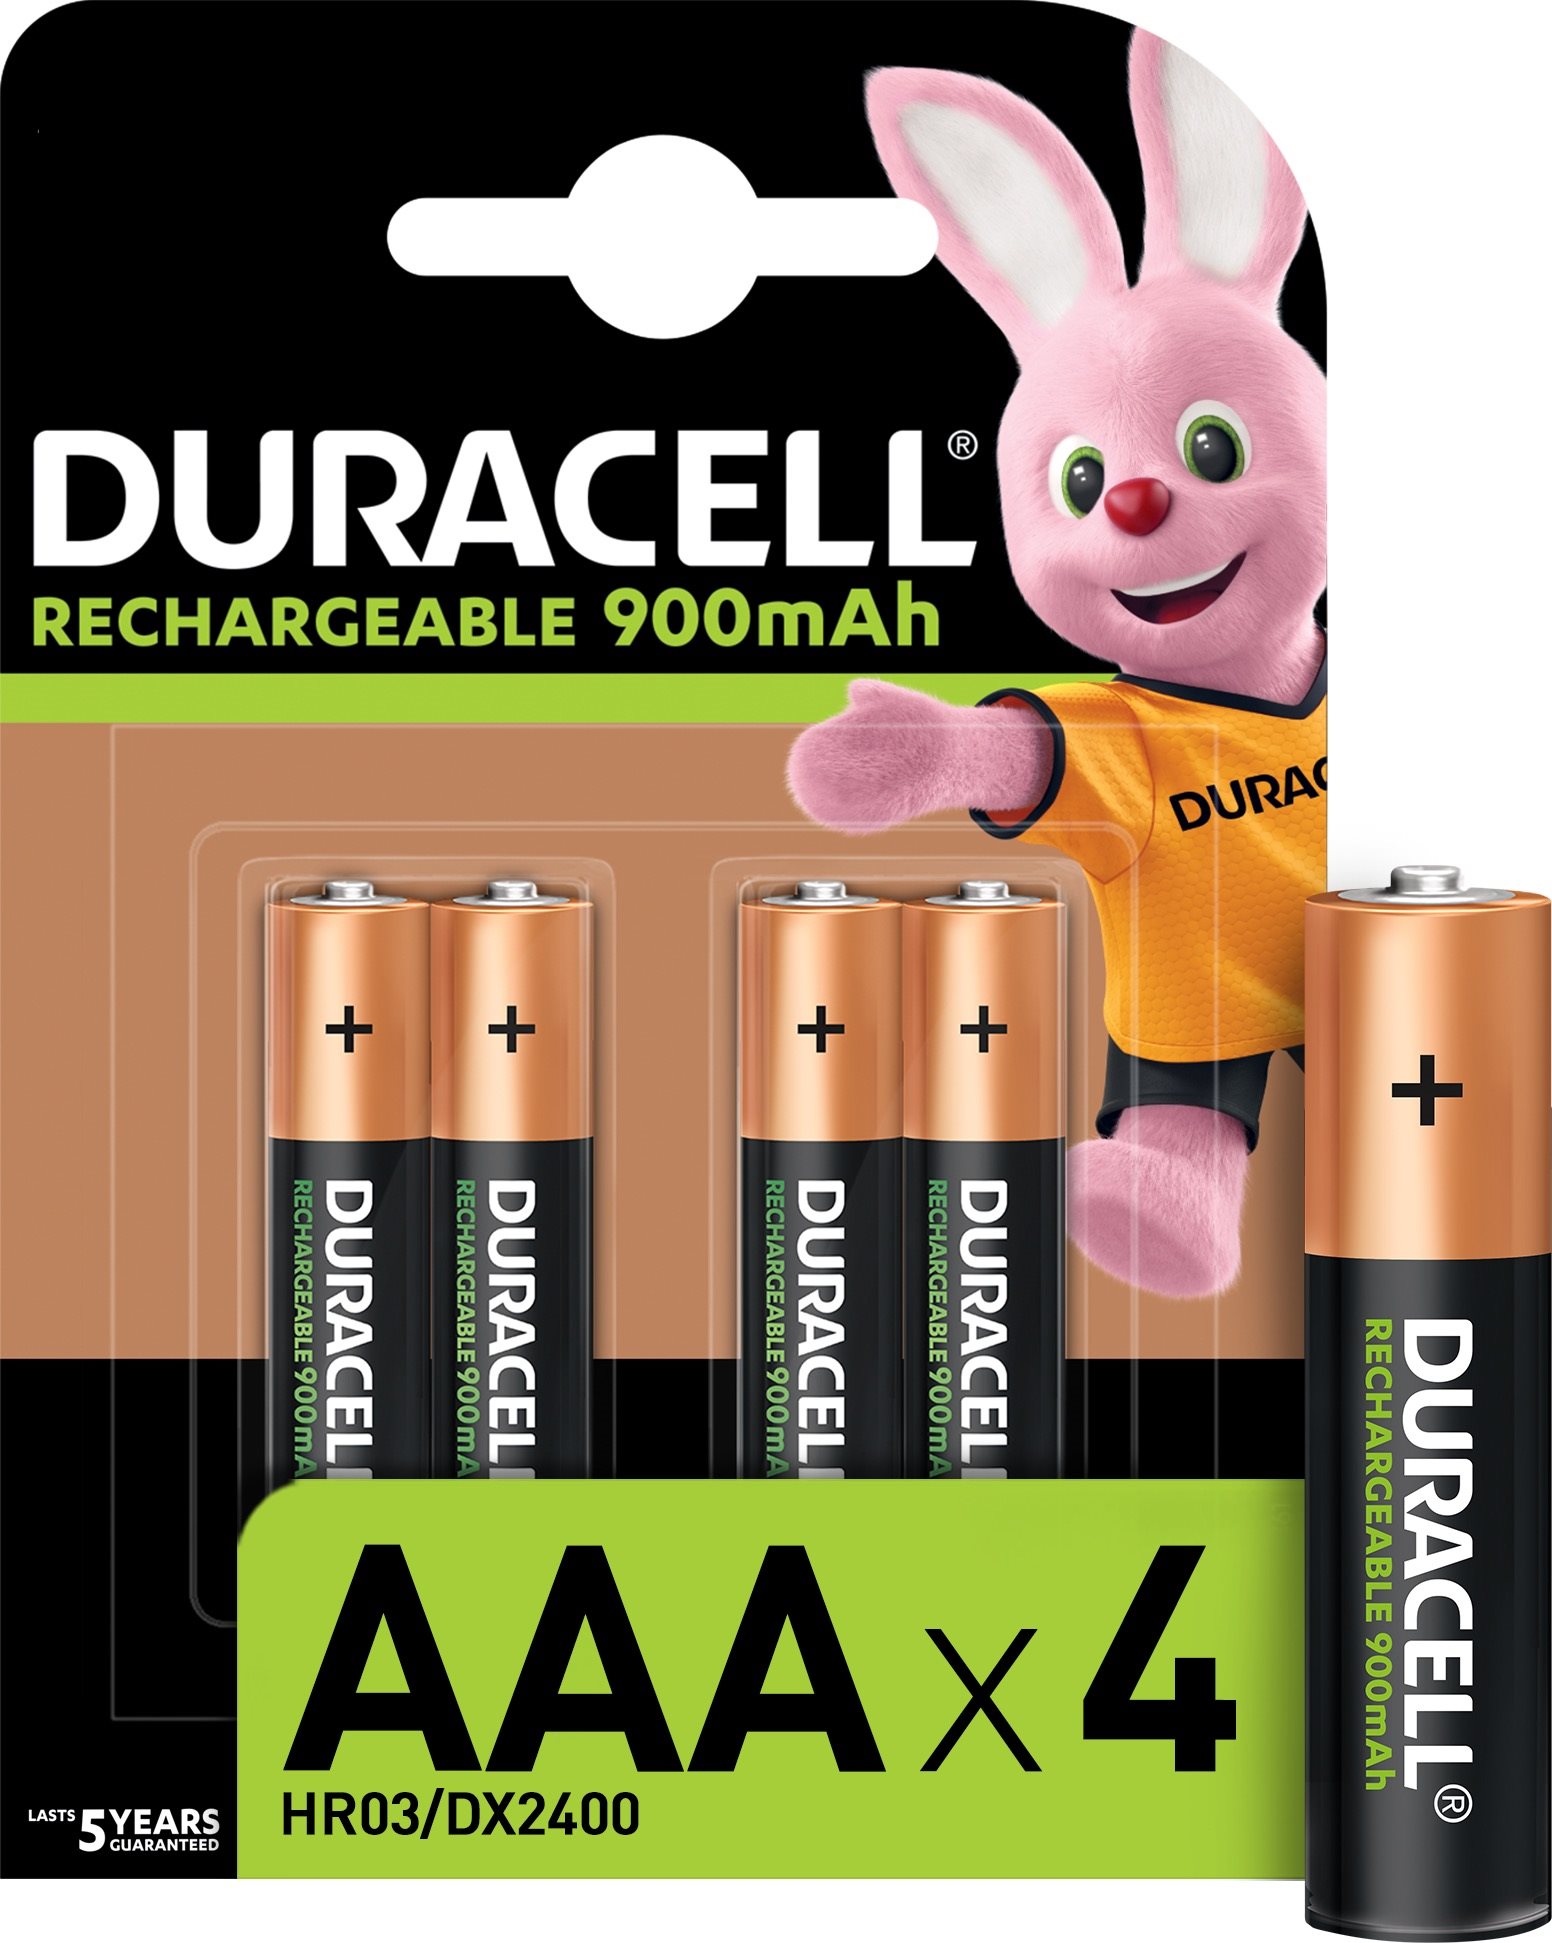 Tölthető elem Duracell Rechargeable elem 900 mAh 4 db (AAA)